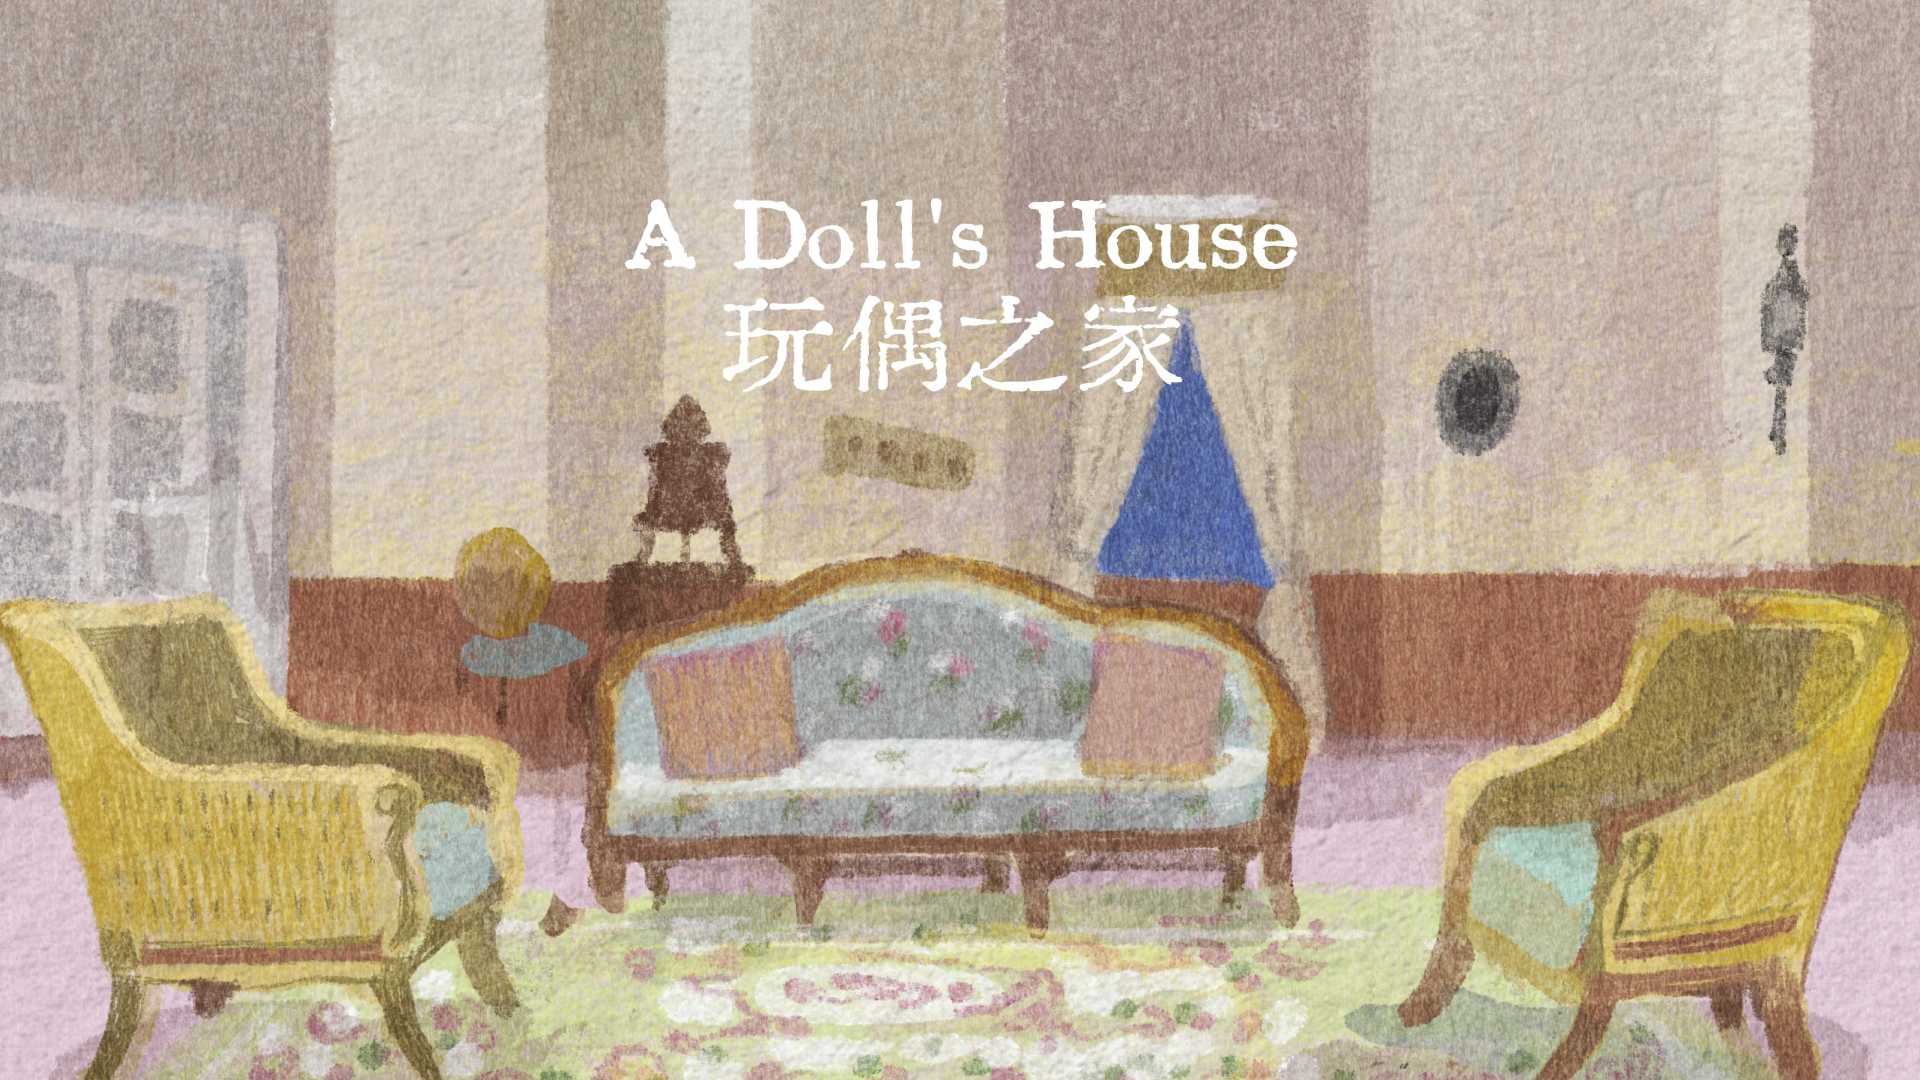 创意 | A Doll's House MAD 玩偶之家手书